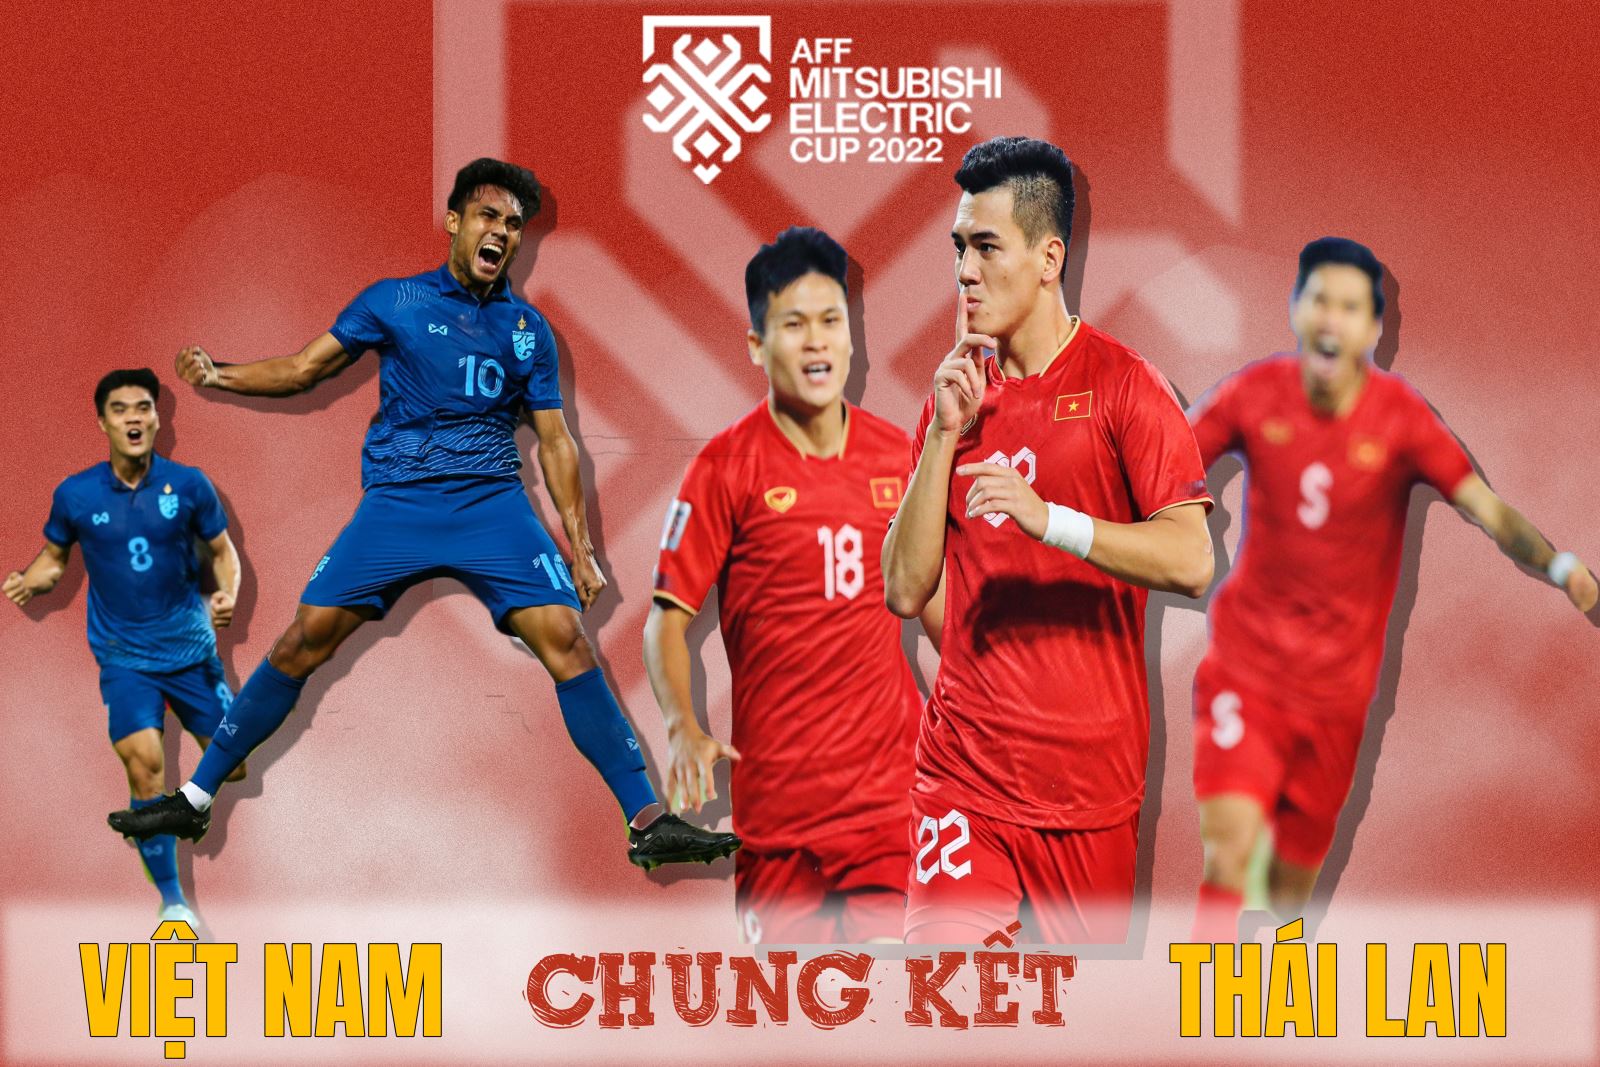 Lịch thi đấu chung kết AFF Cup 2022 giữa Việt Nam - Thái Lan | baotintuc.vn